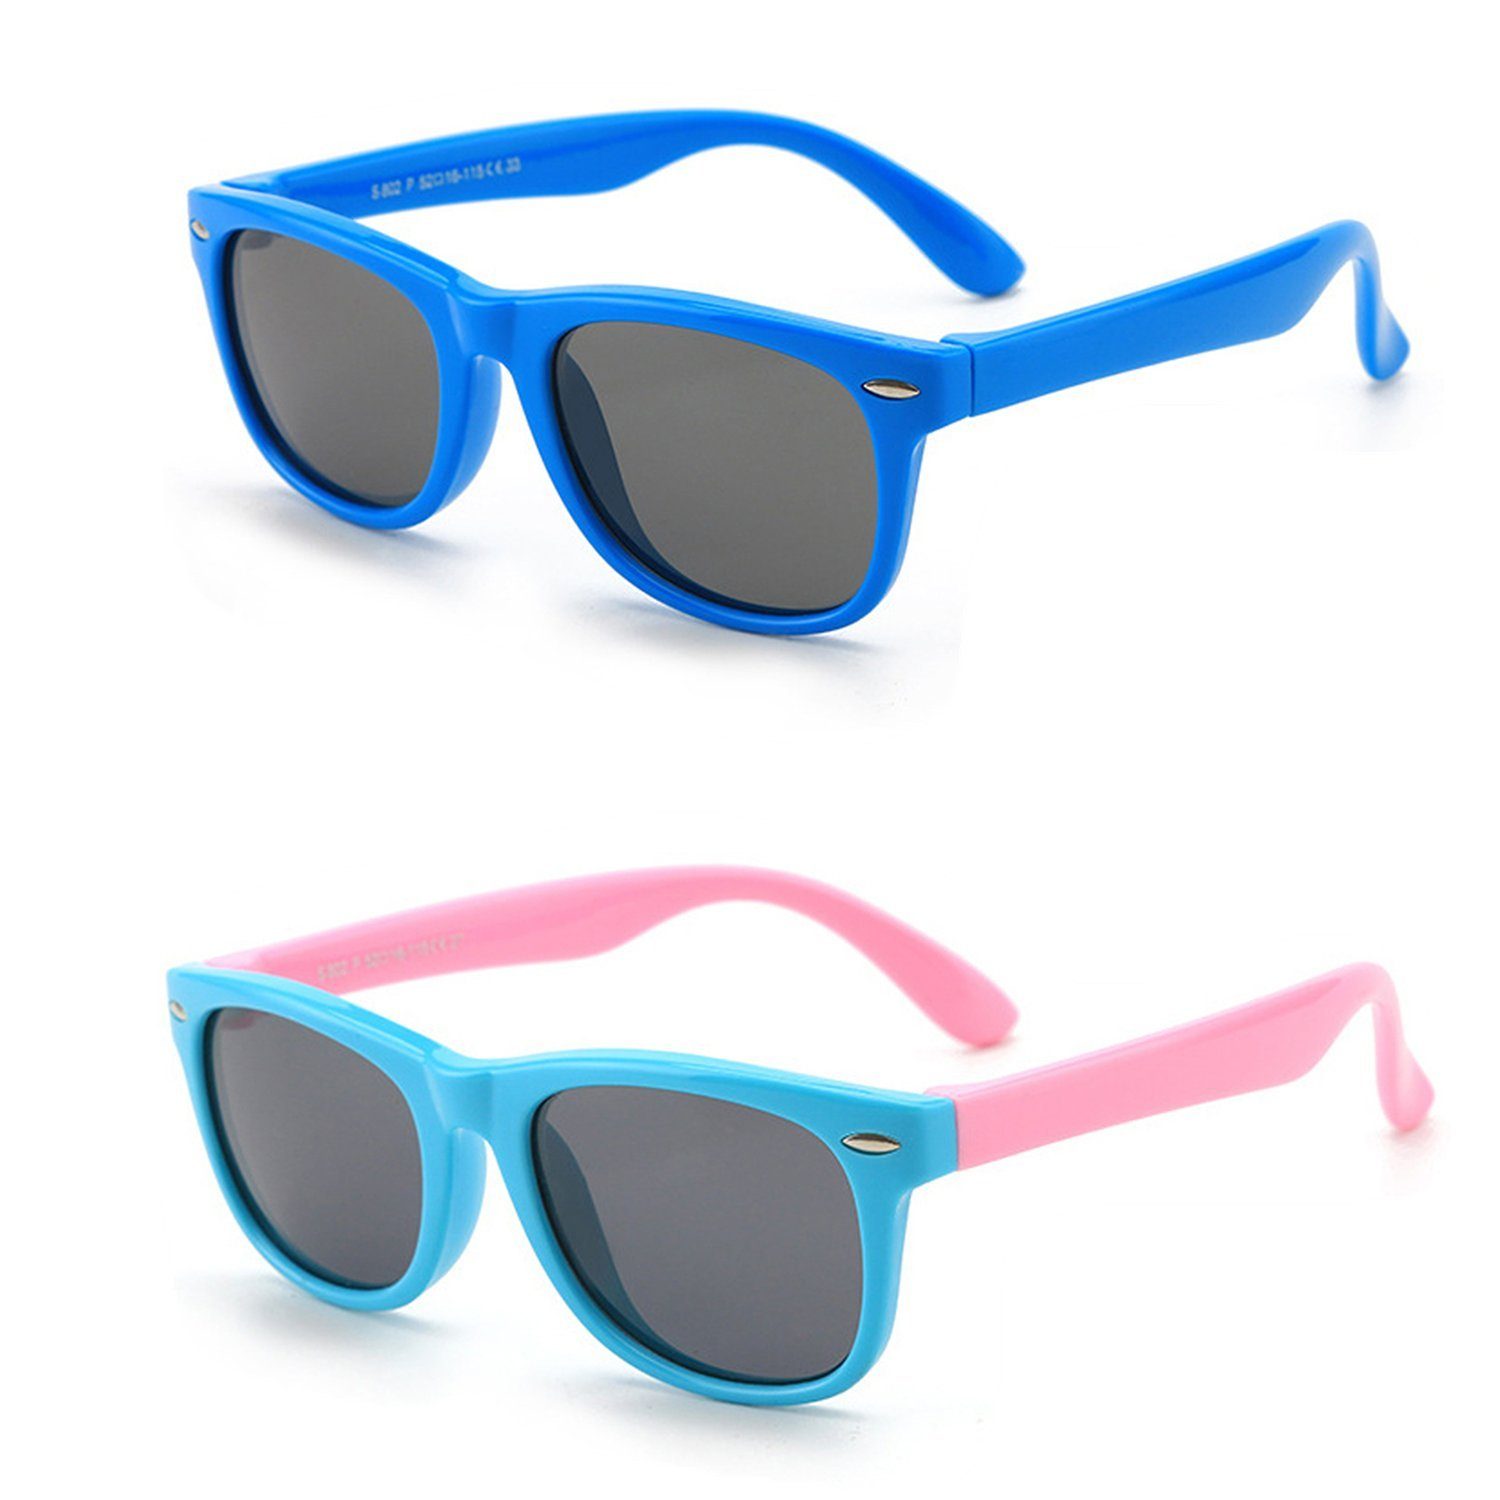 100% für Jungen Gummi Olotos Schutz UV400 Brille Sonnenbrille Sonnenbrille Kinder Mädchen Blau+Hellblau